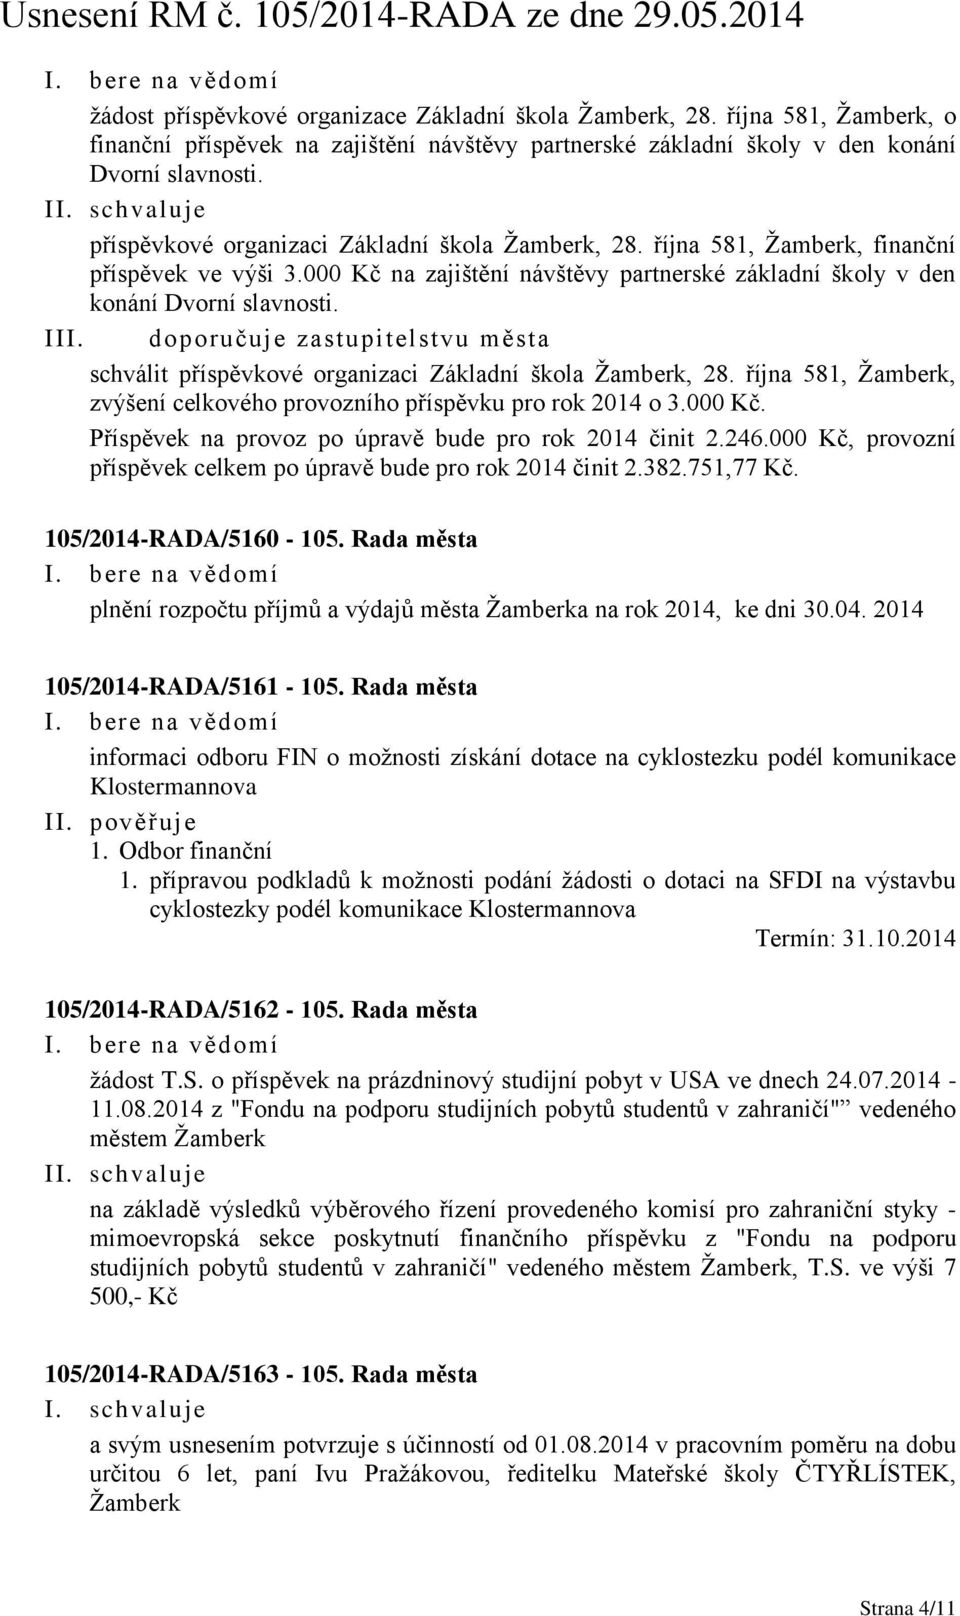 doporučuje zastupitelstvu města schválit příspěvkové organizaci Základní škola Žamberk, 28. října 581, Žamberk, zvýšení celkového provozního příspěvku pro rok 2014 o 3.000 Kč.